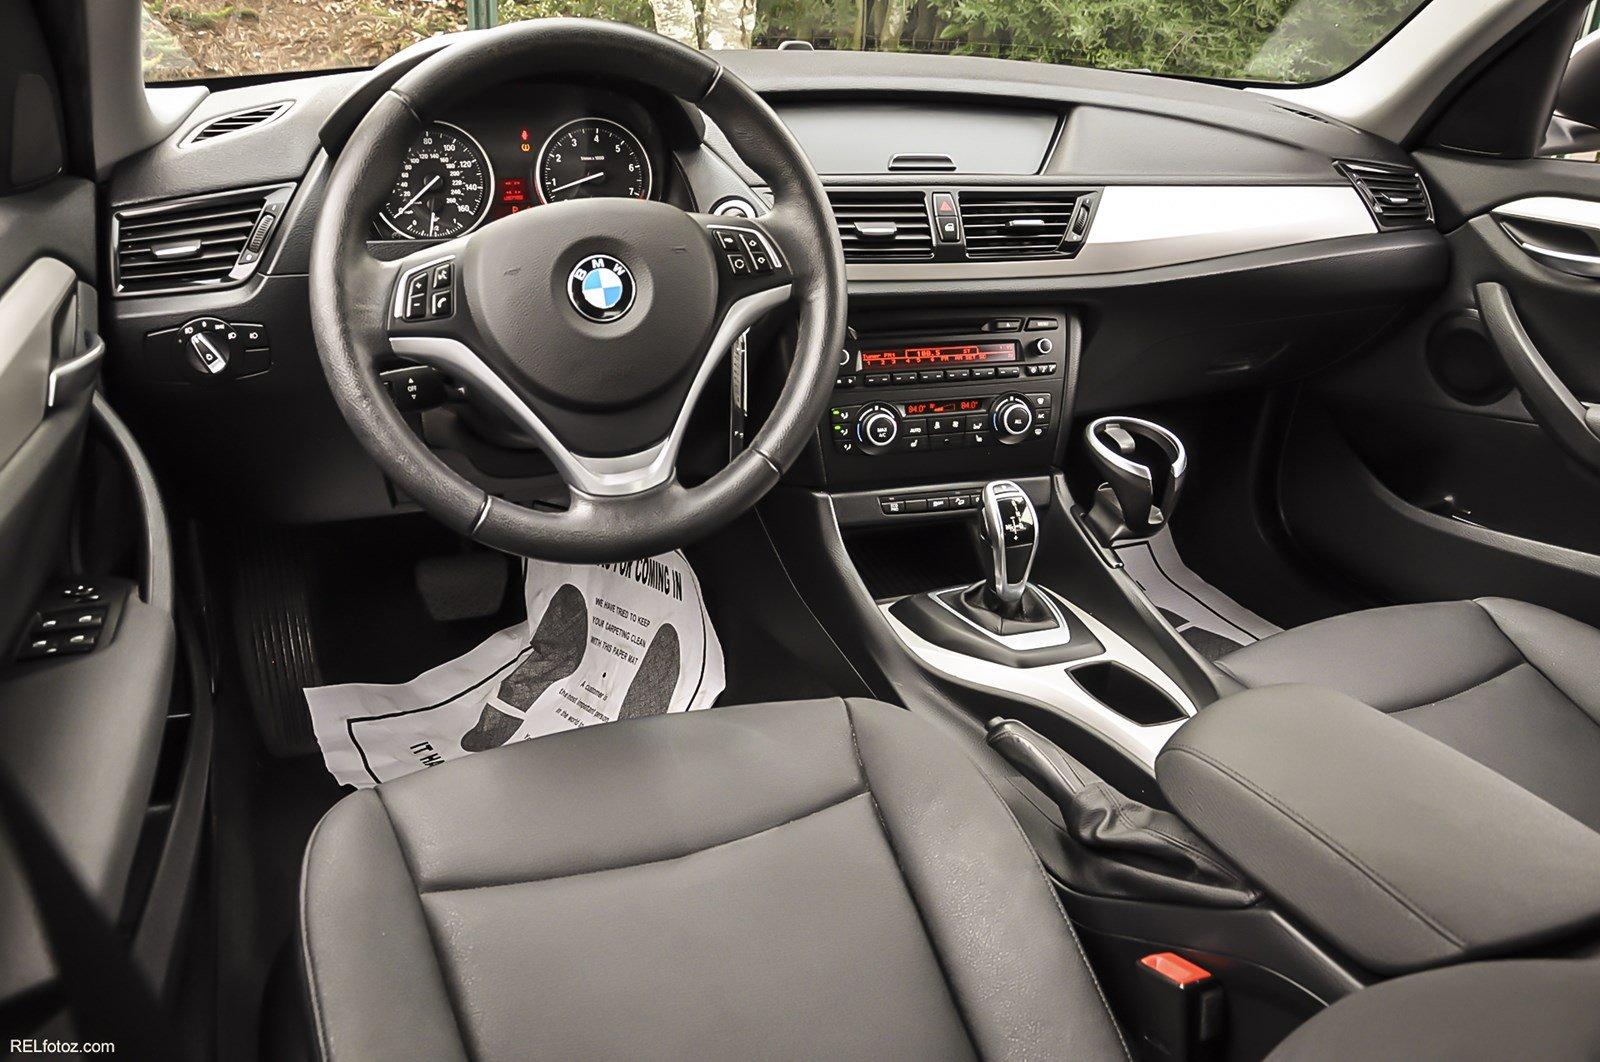 BMW USA News - BMW X1 2014